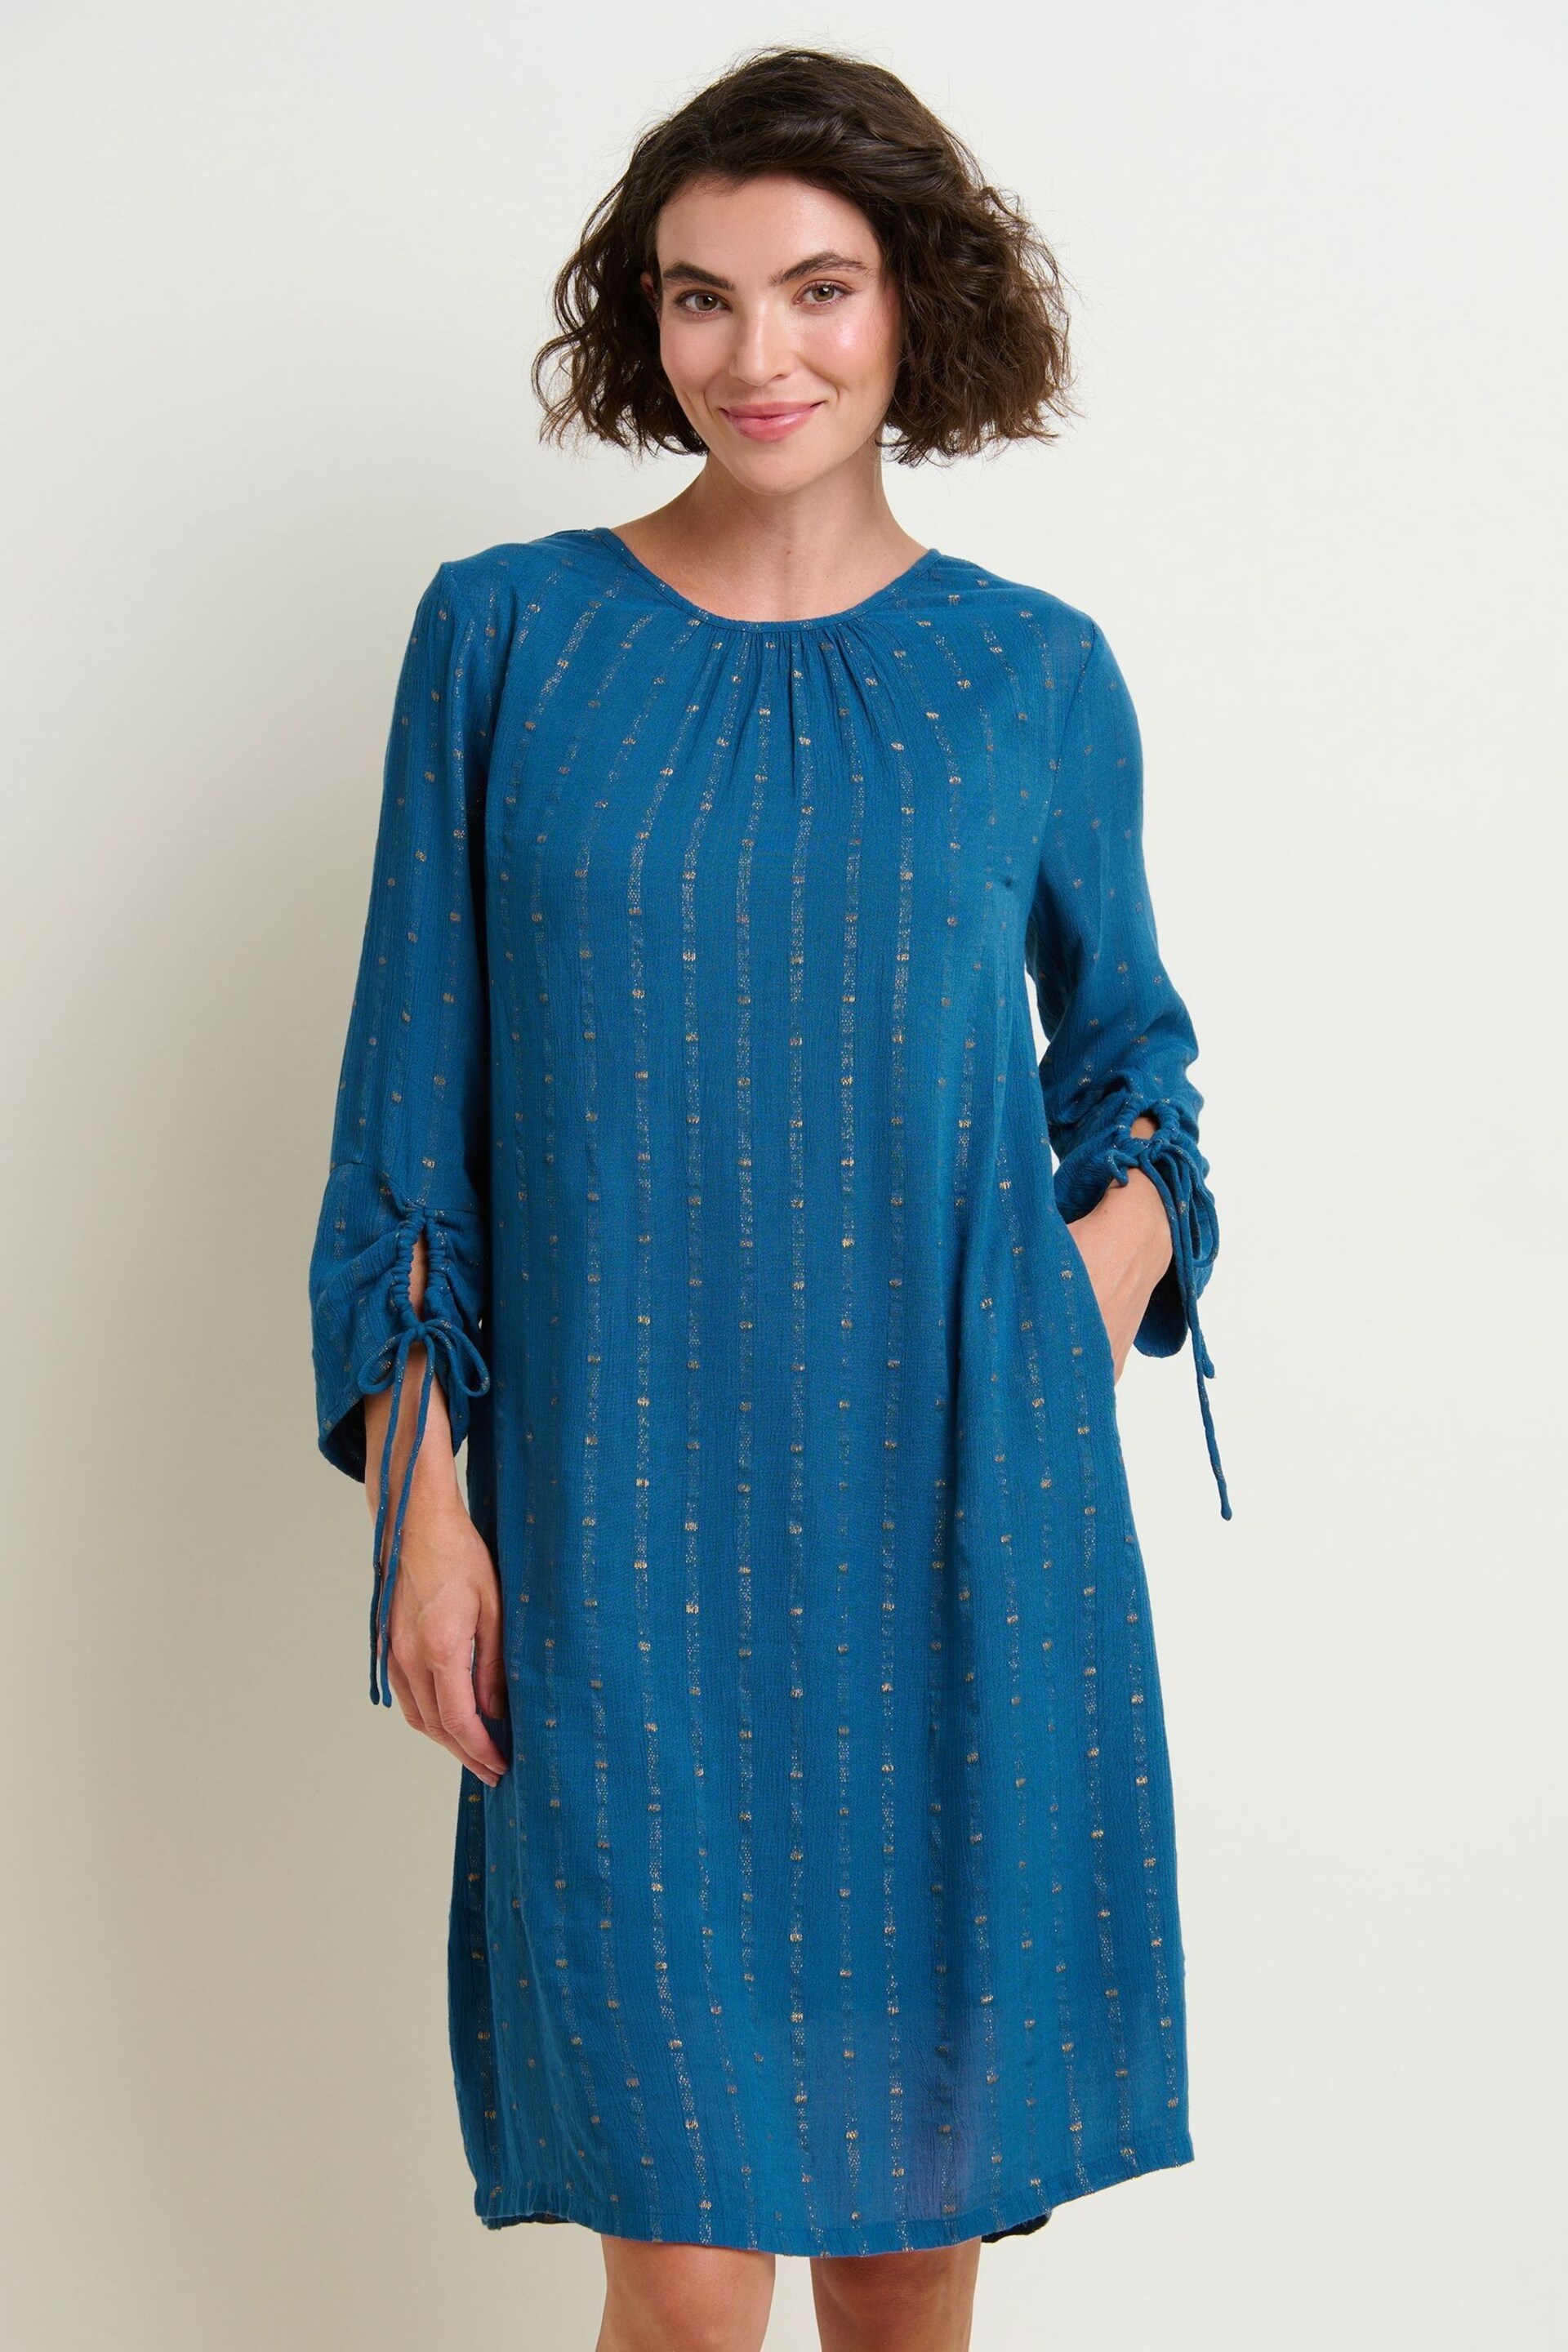 Brakeburn Blue Ivy Dress - Image 1 of 4